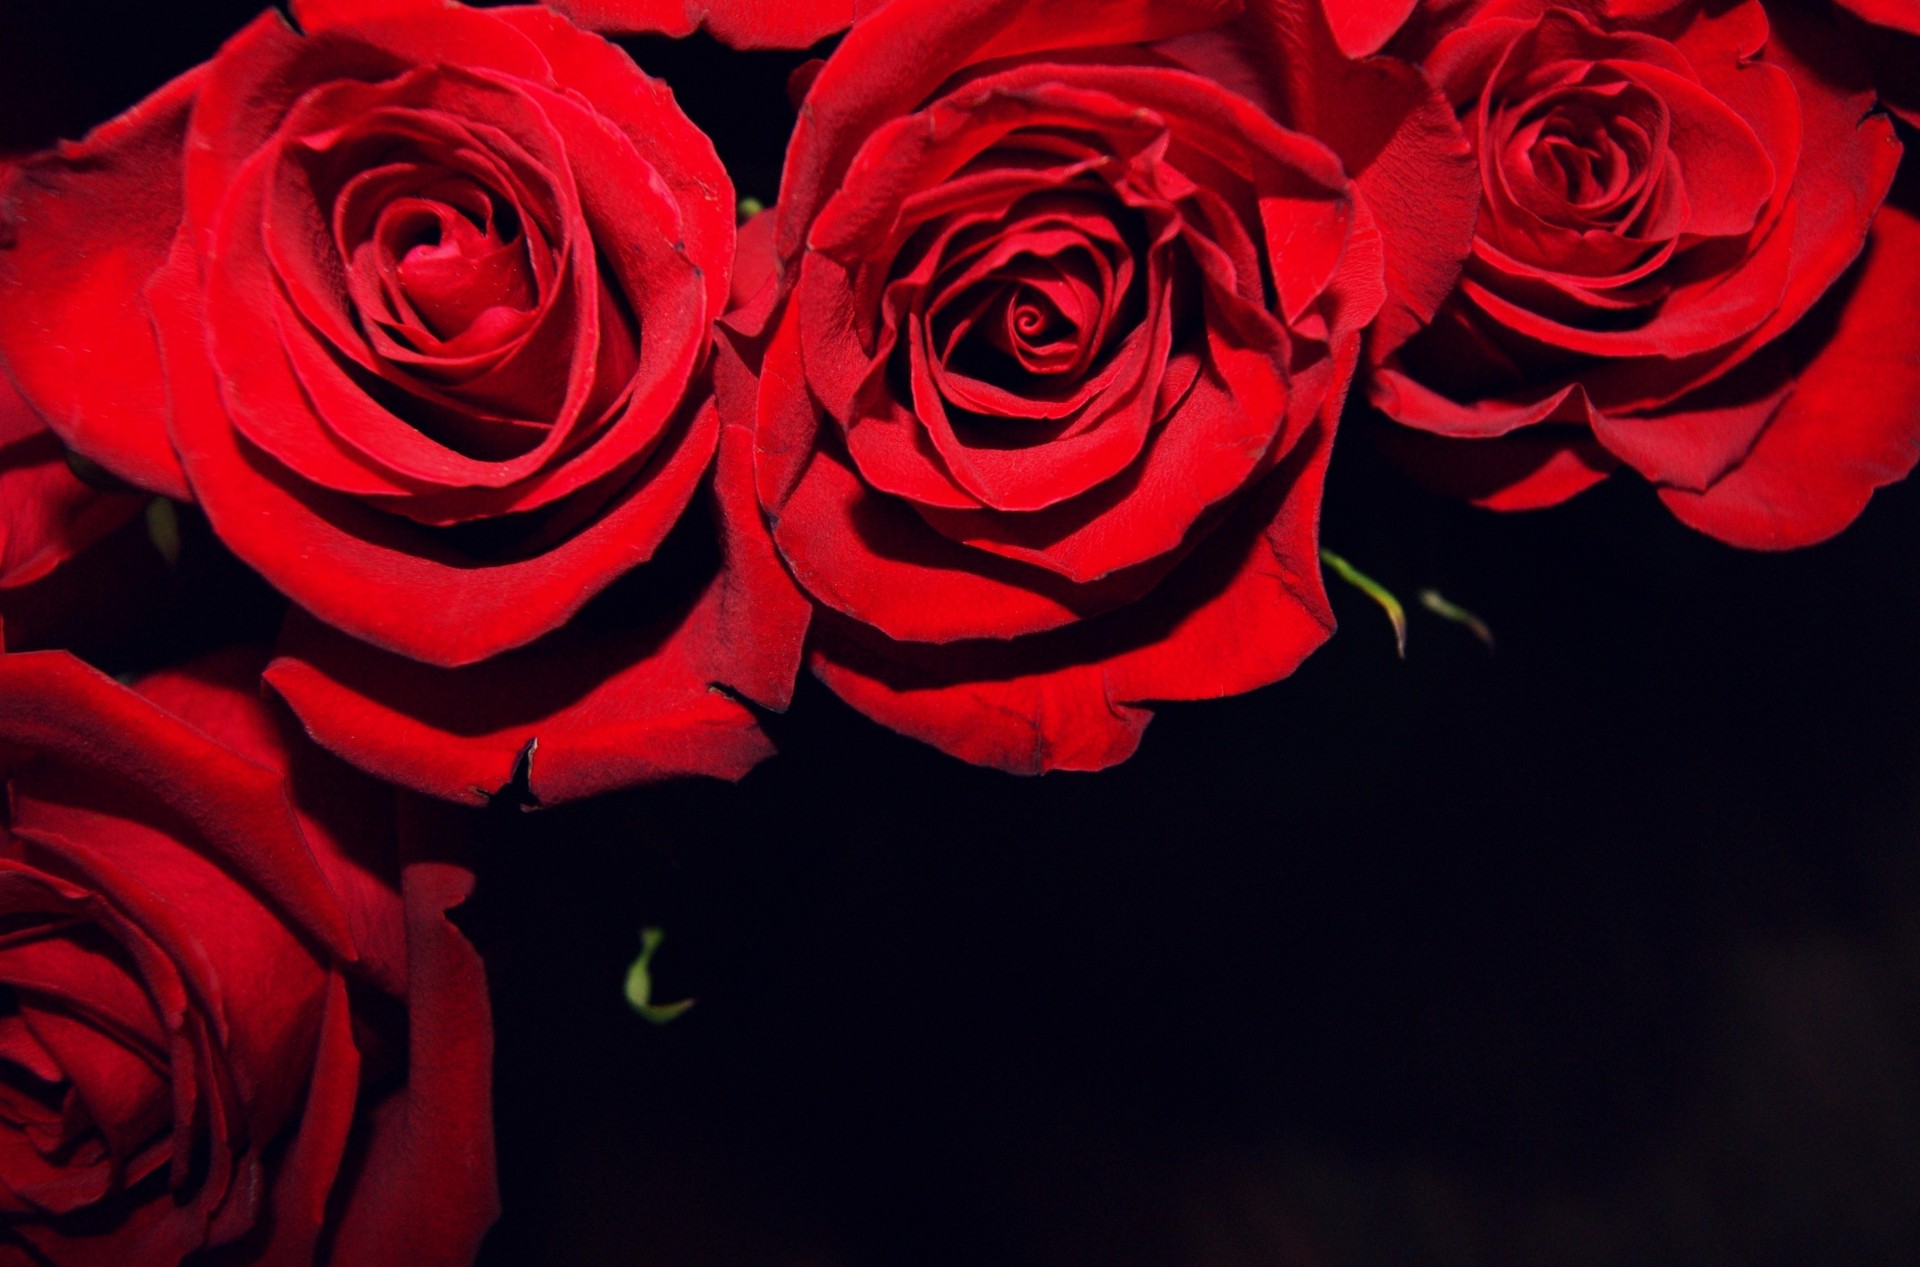 schwarzer hintergrund knospen blumen rosen rot